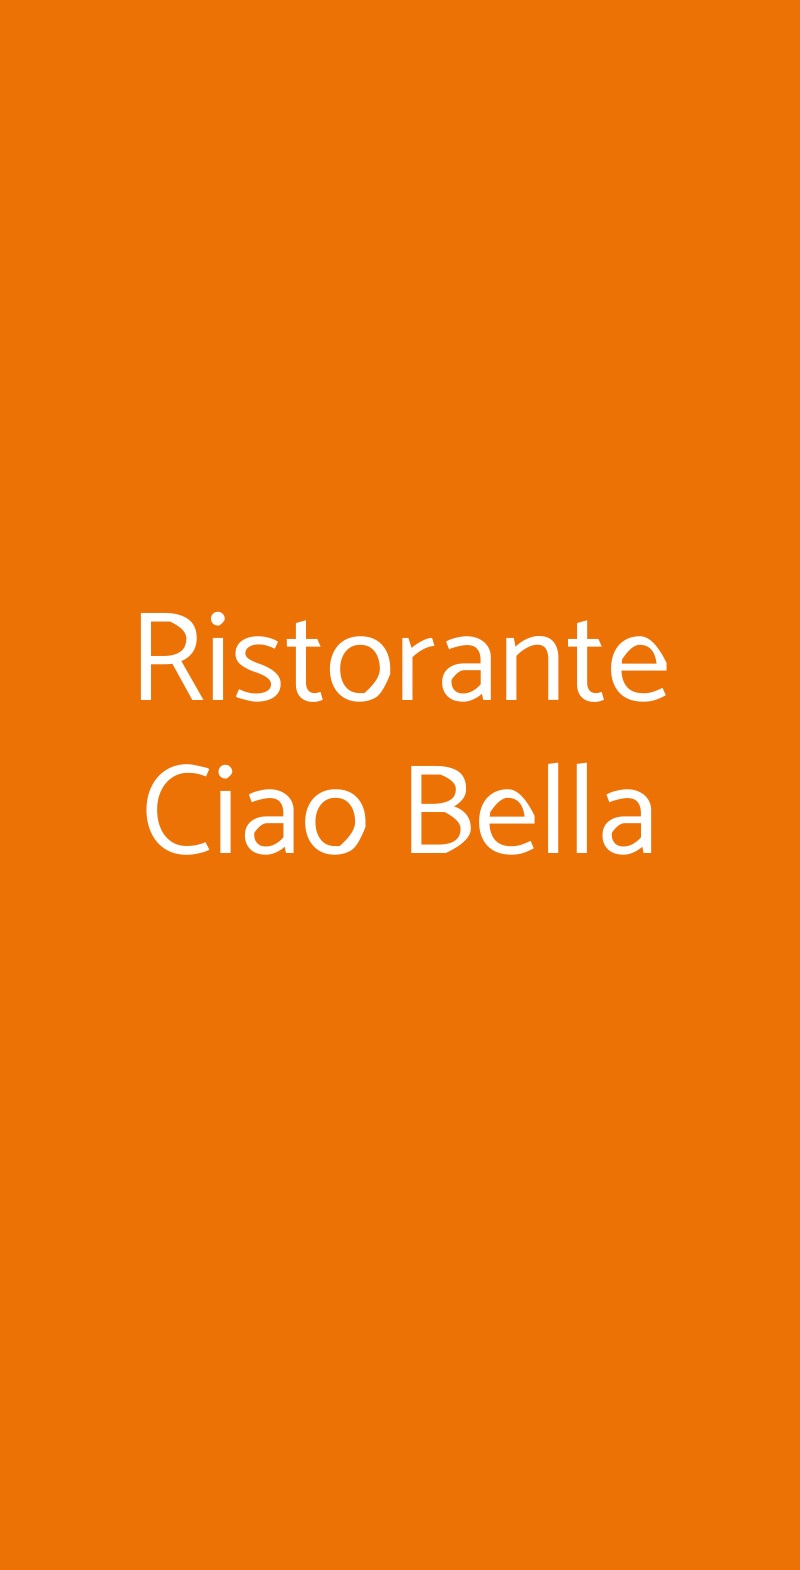 Ristorante Ciao Bella Roma menù 1 pagina